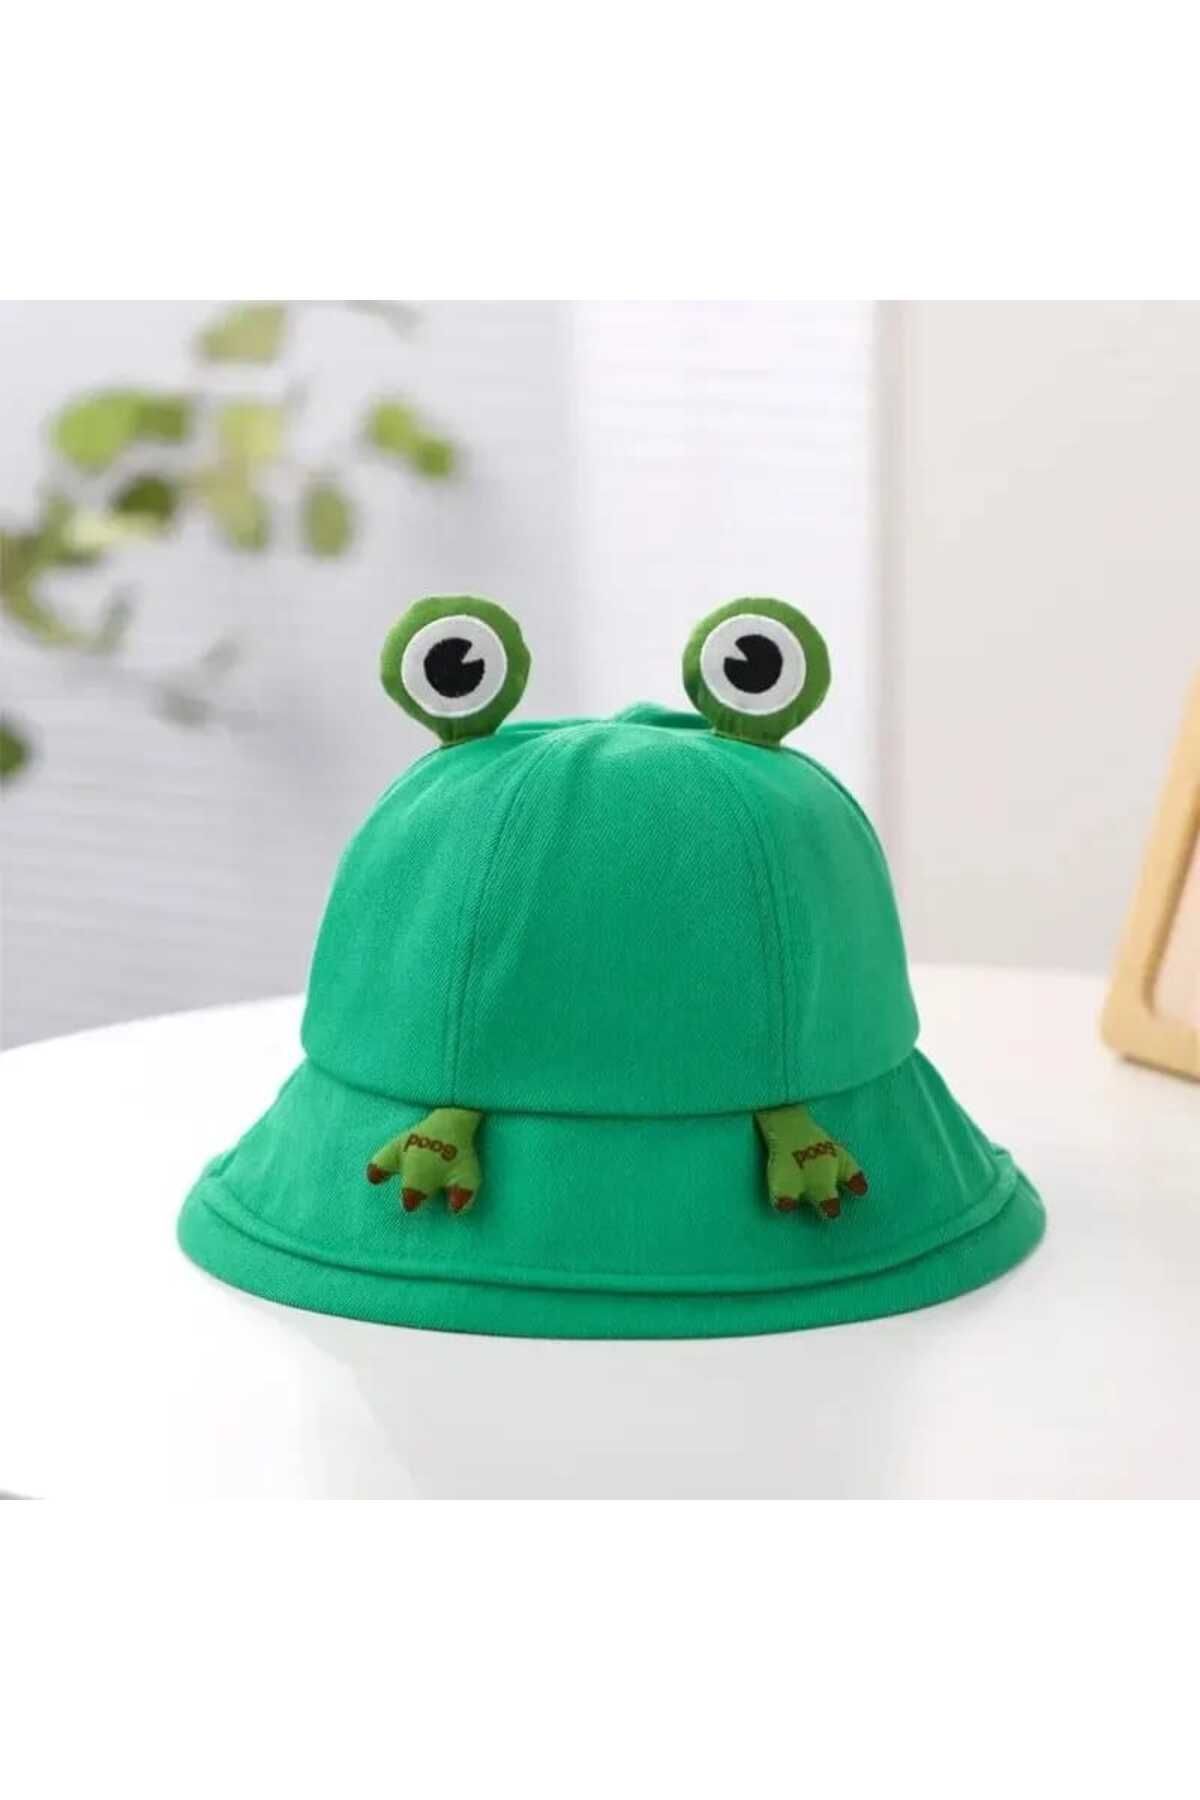 Meyra Accessories yeni model tarz kova şapka rengarenk kaliteli güneşlik şapka hediyelik şapka bere